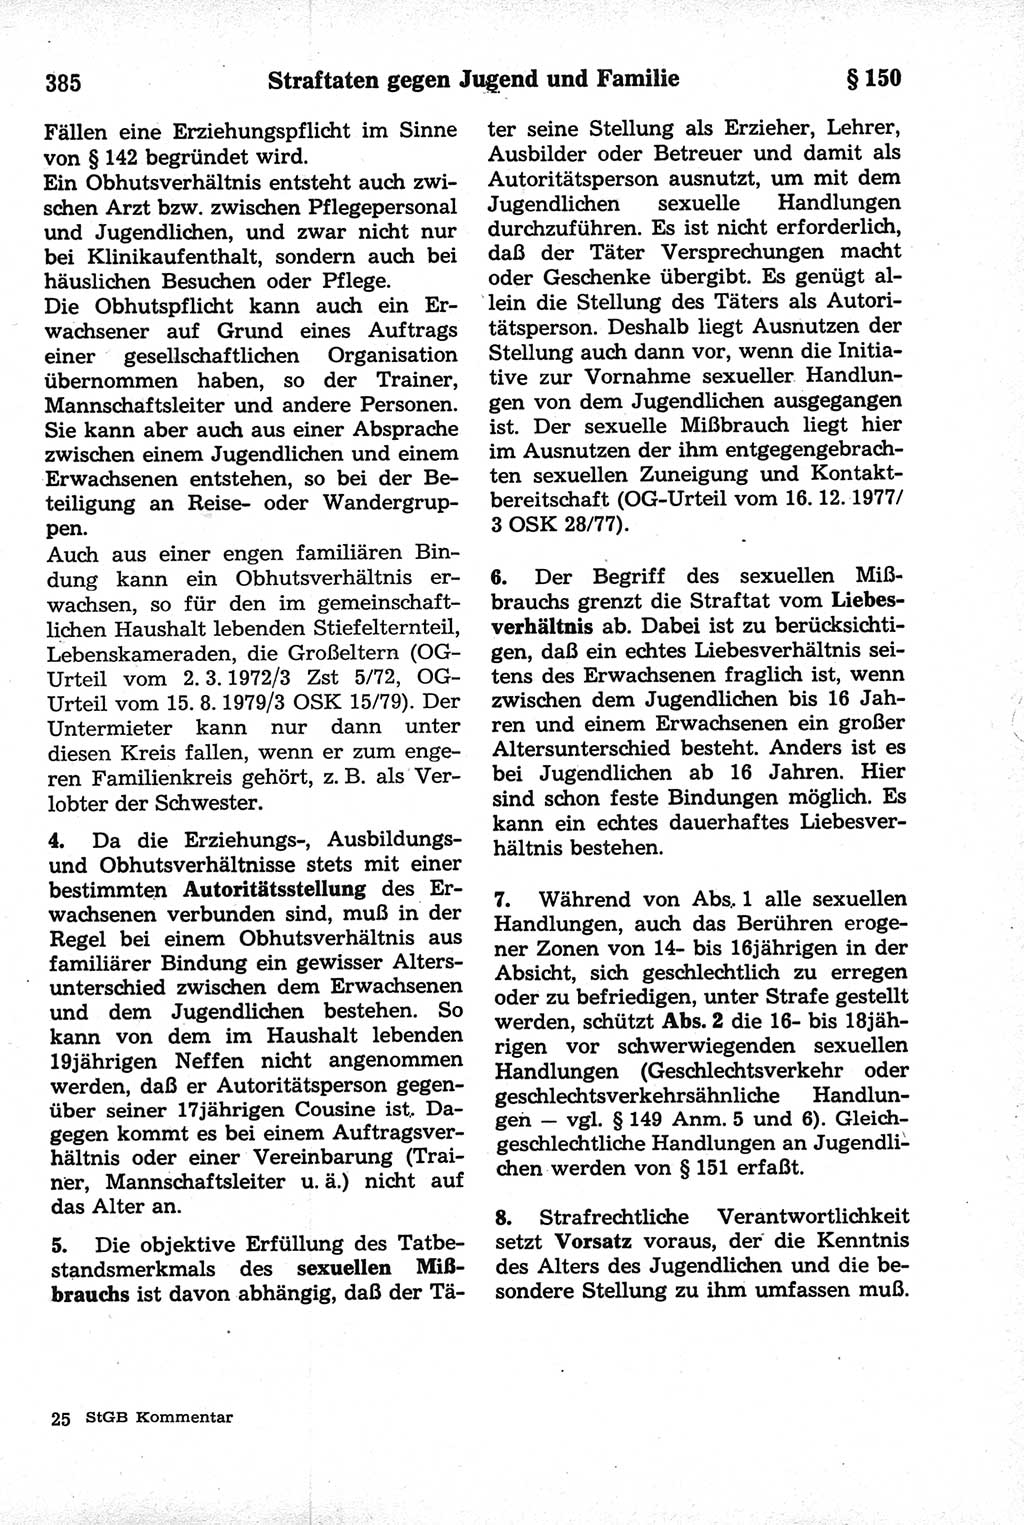 Strafrecht der Deutschen Demokratischen Republik (DDR), Kommentar zum Strafgesetzbuch (StGB) 1981, Seite 385 (Strafr. DDR Komm. StGB 1981, S. 385)